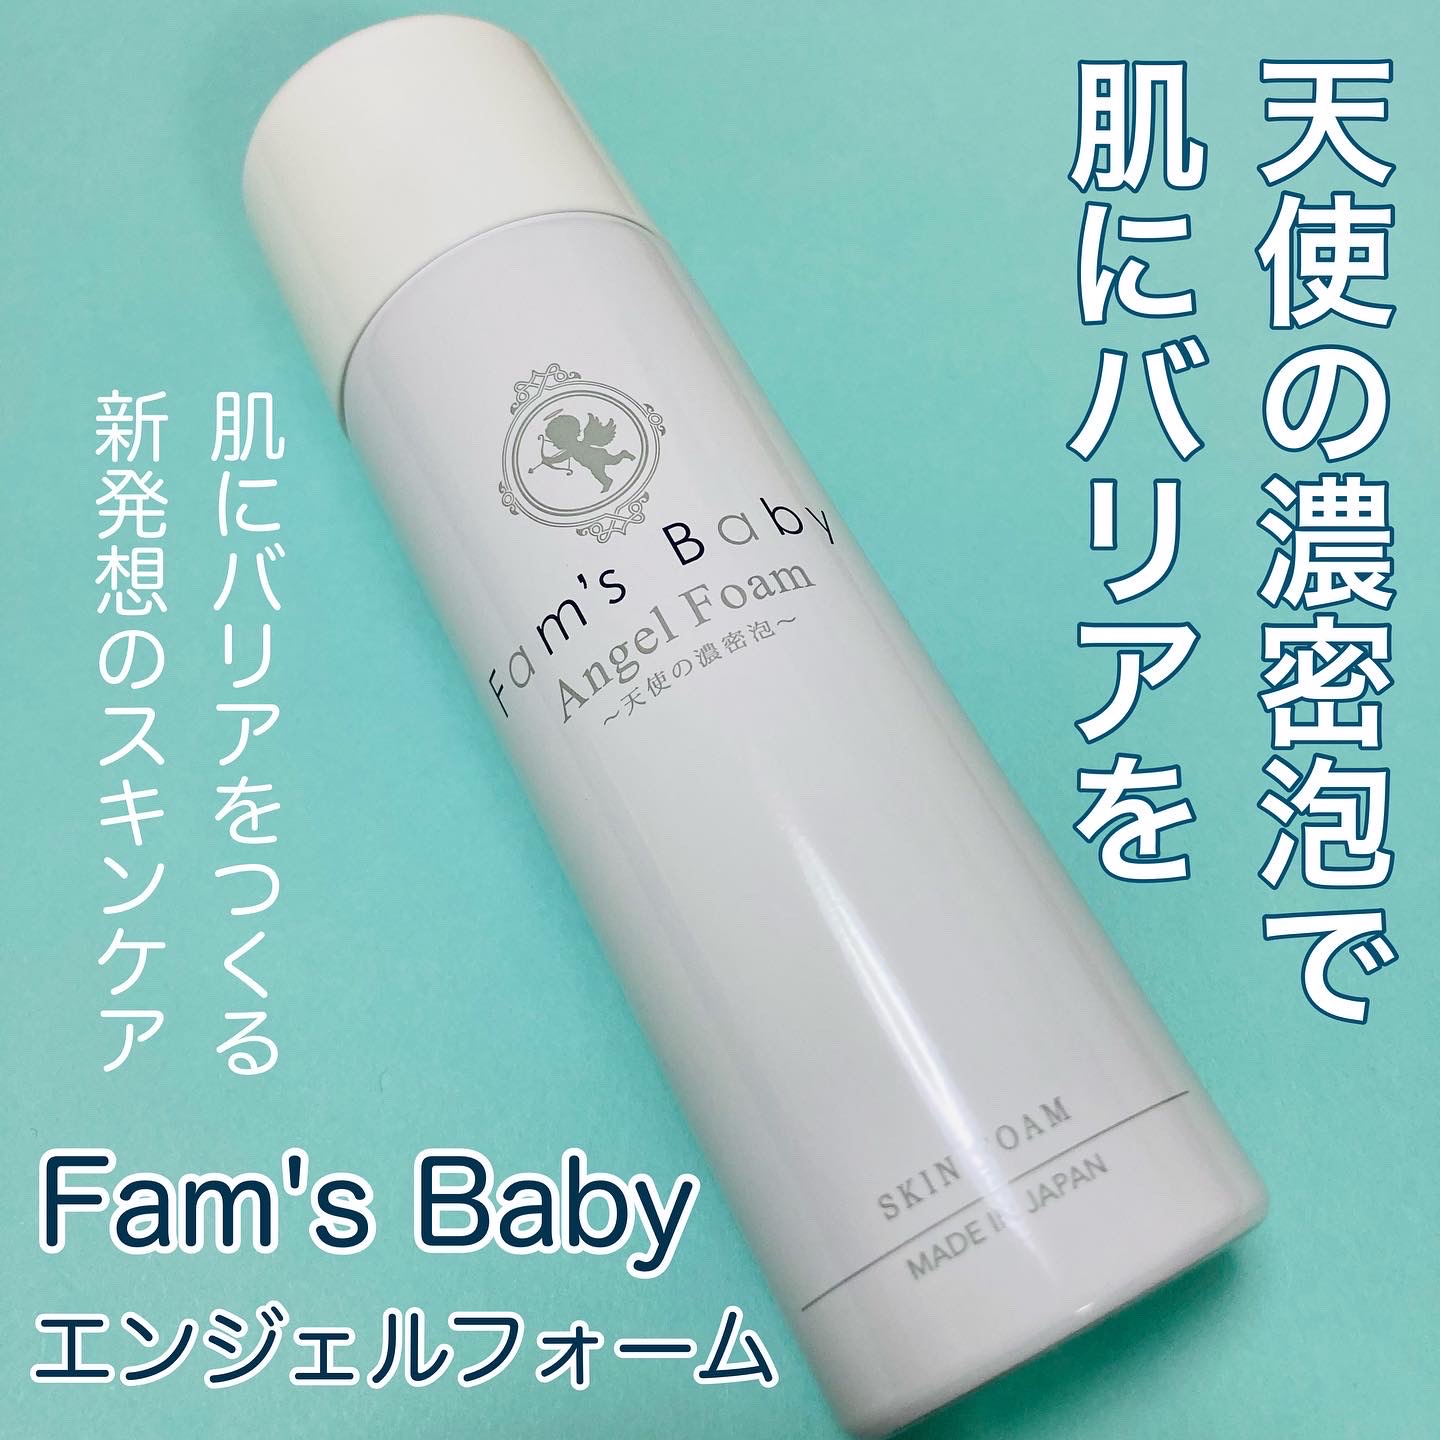 Fam's Baby(ファムズベビー) エンジェルフォーム - 通販 - gofukuyasan.com